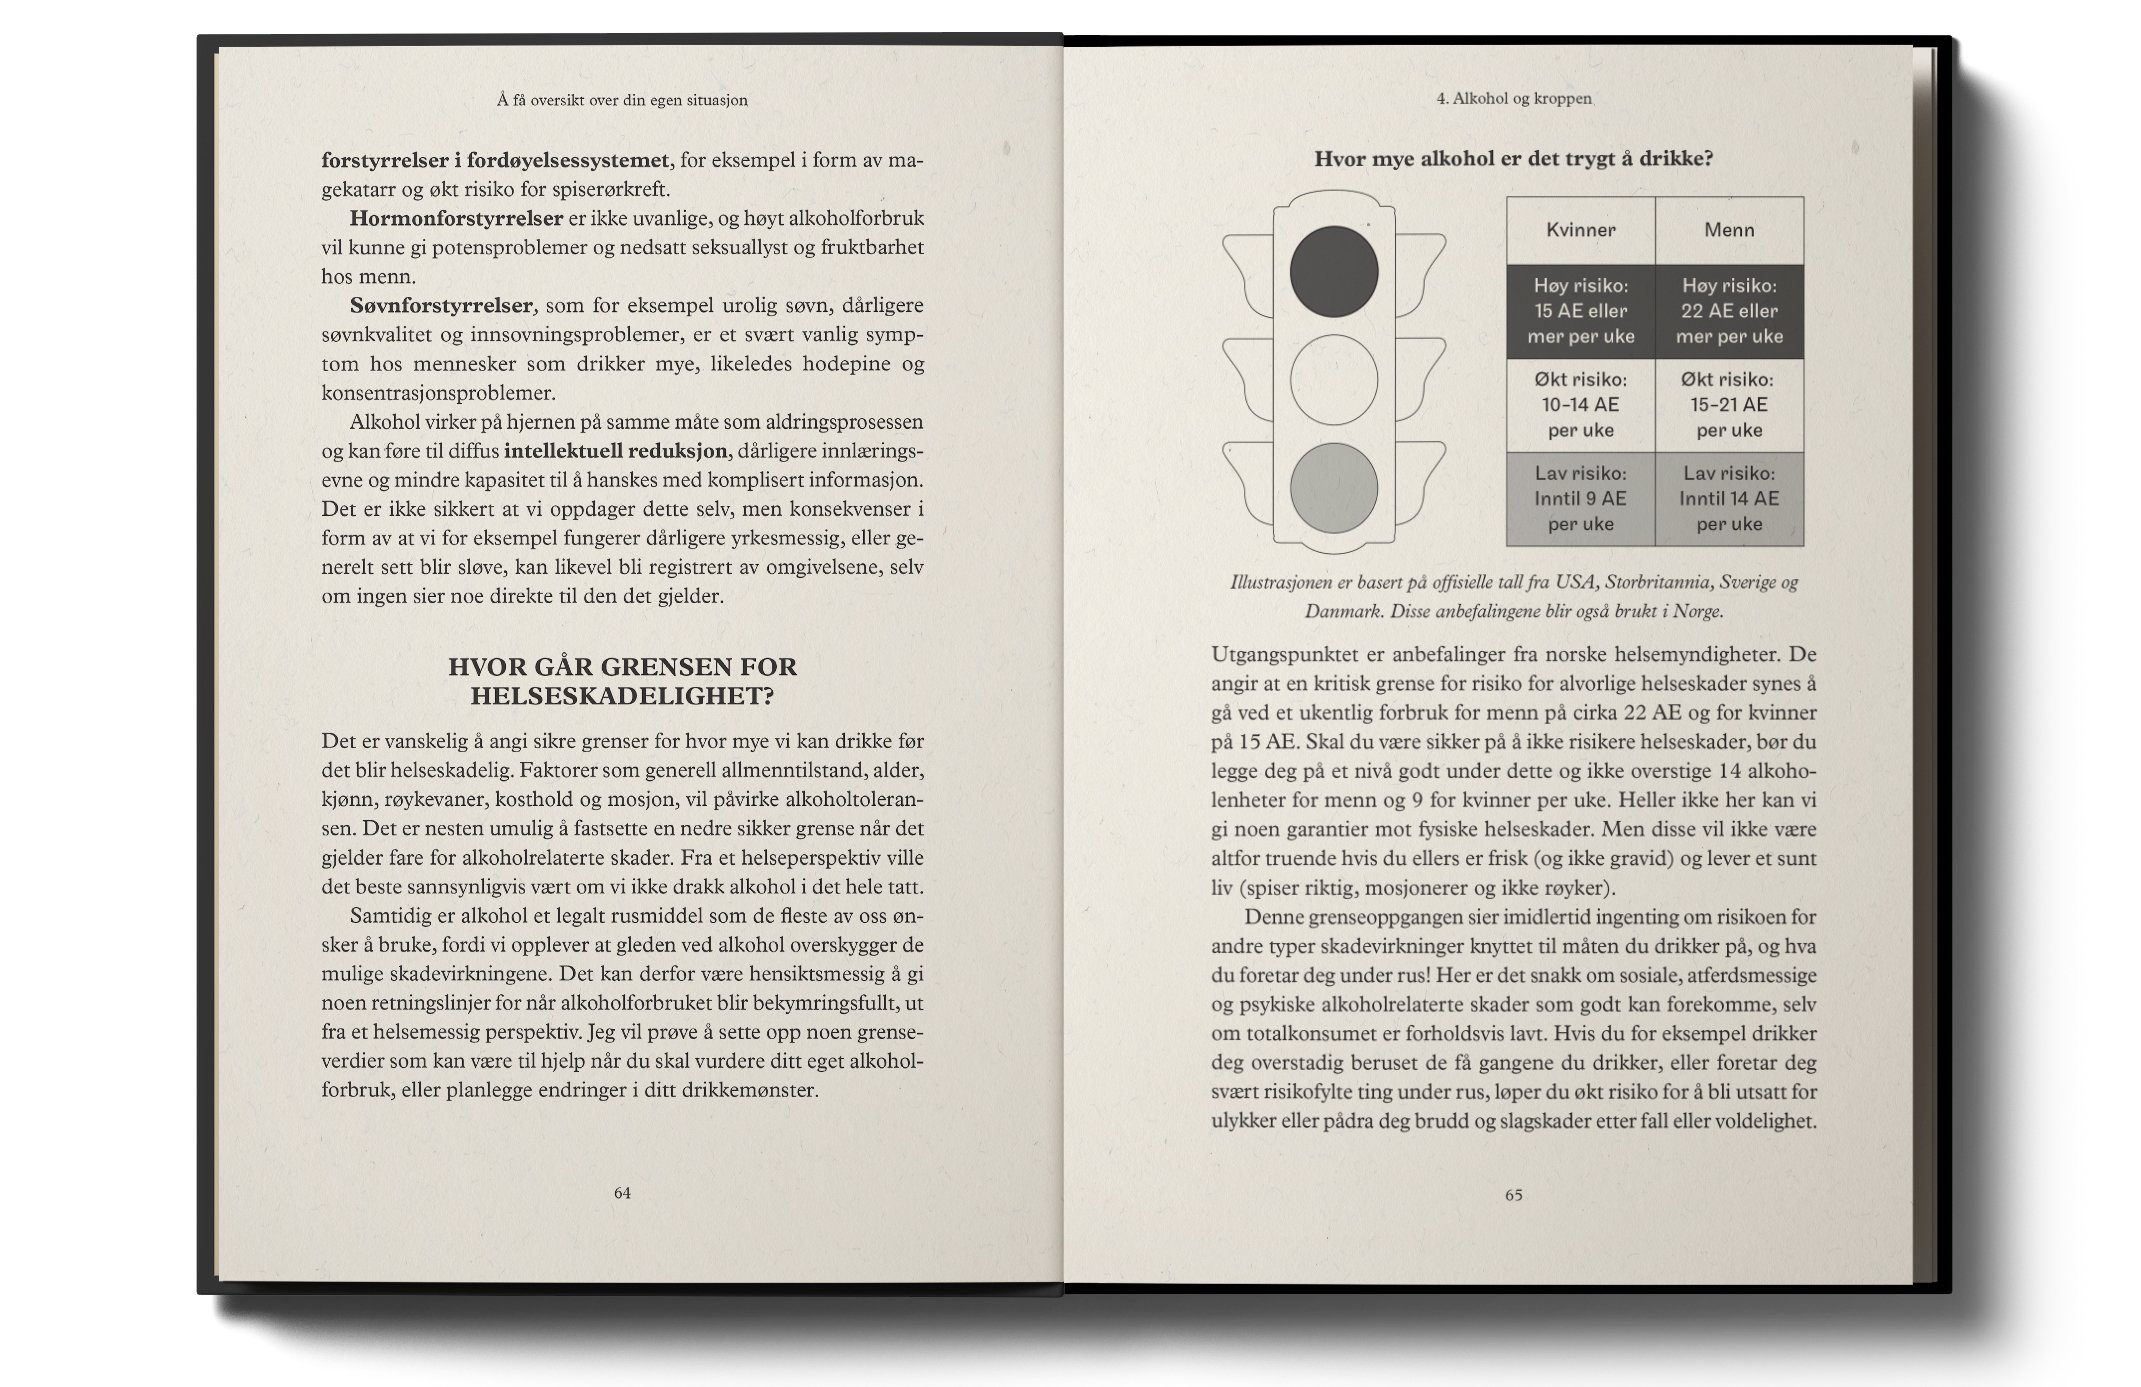 Typesetting & Interior book design